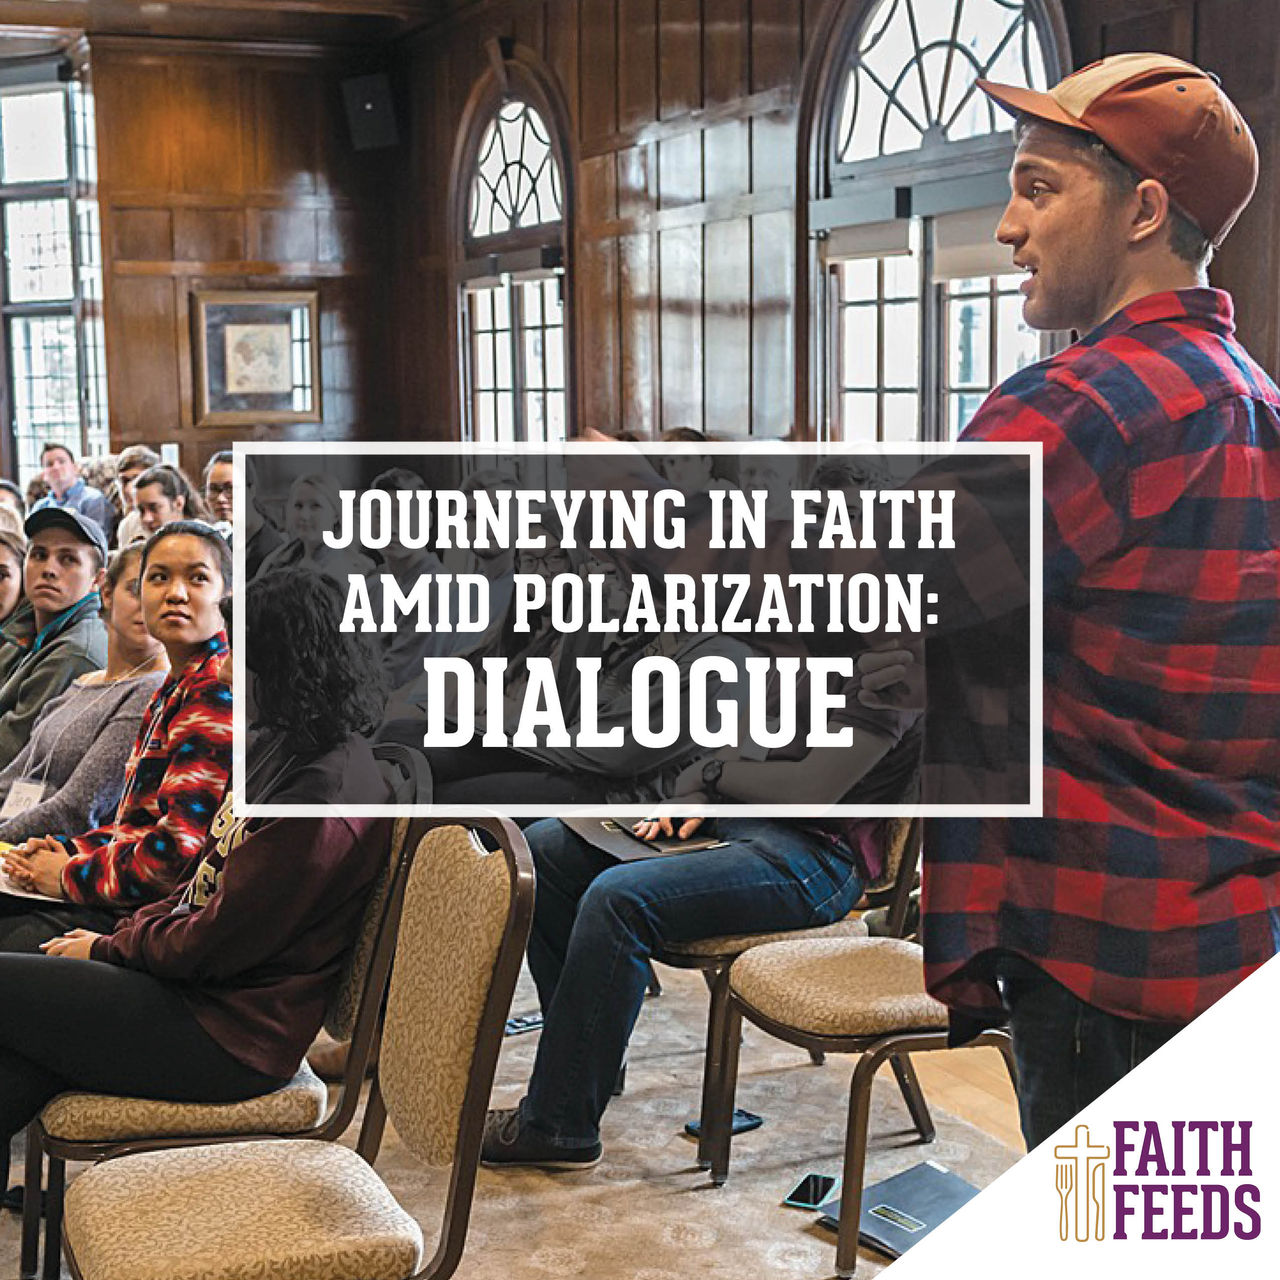 FAITH FEEDS Journeying in Faith Amid Polarization - Friendship